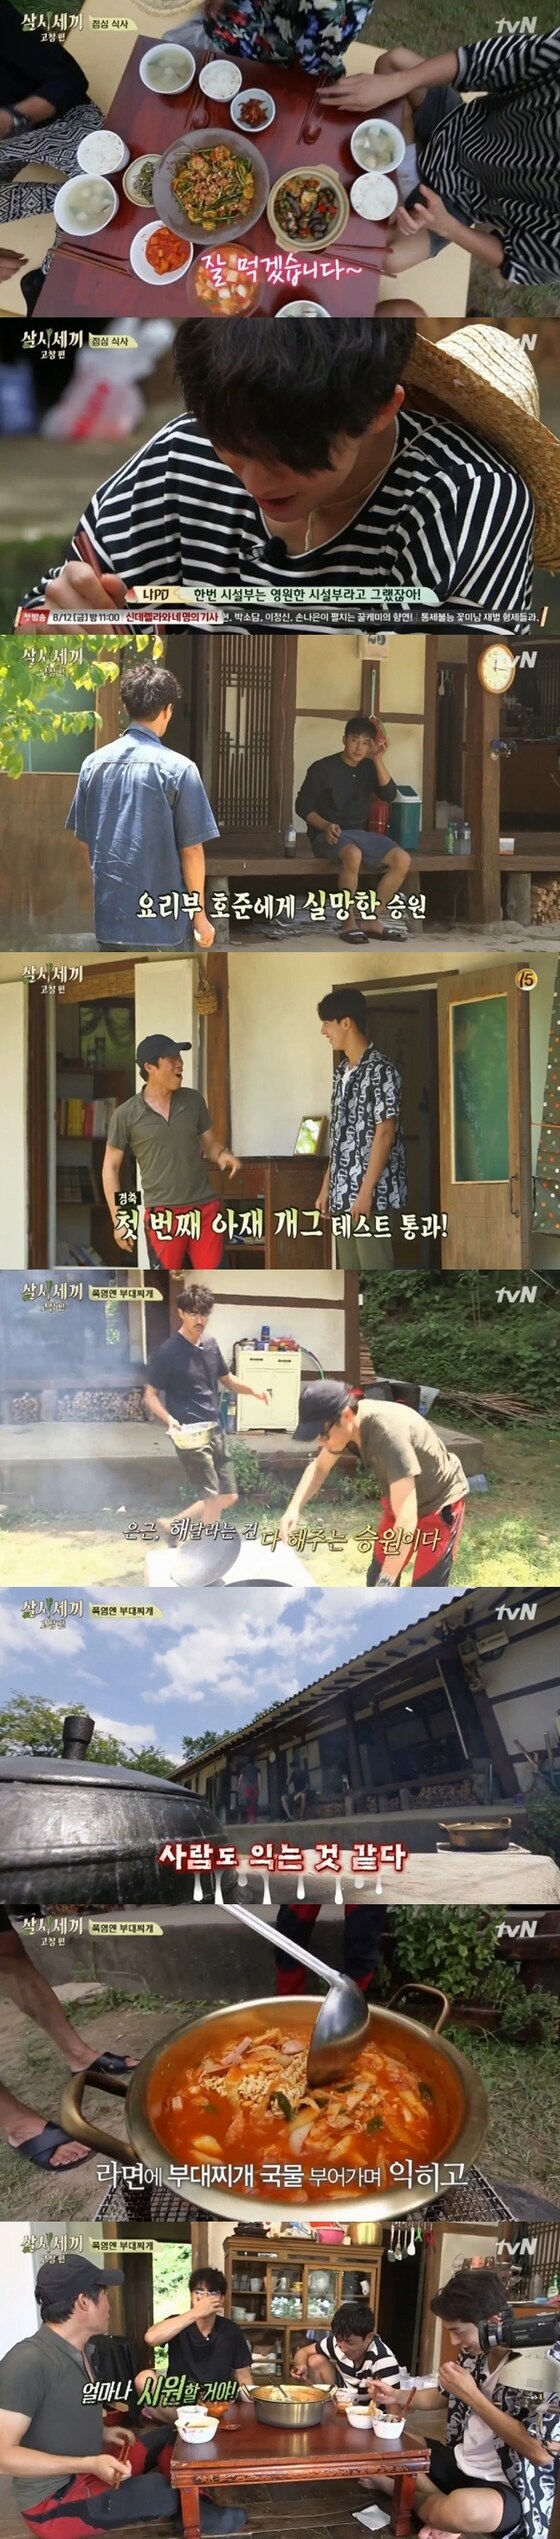 고창에 폭염이 찾아왔음에도 삼시세끼 식구들이 이열치열 밥상을 차려냈다. © News1star / tvN '삼시세끼-고창편' 캡처